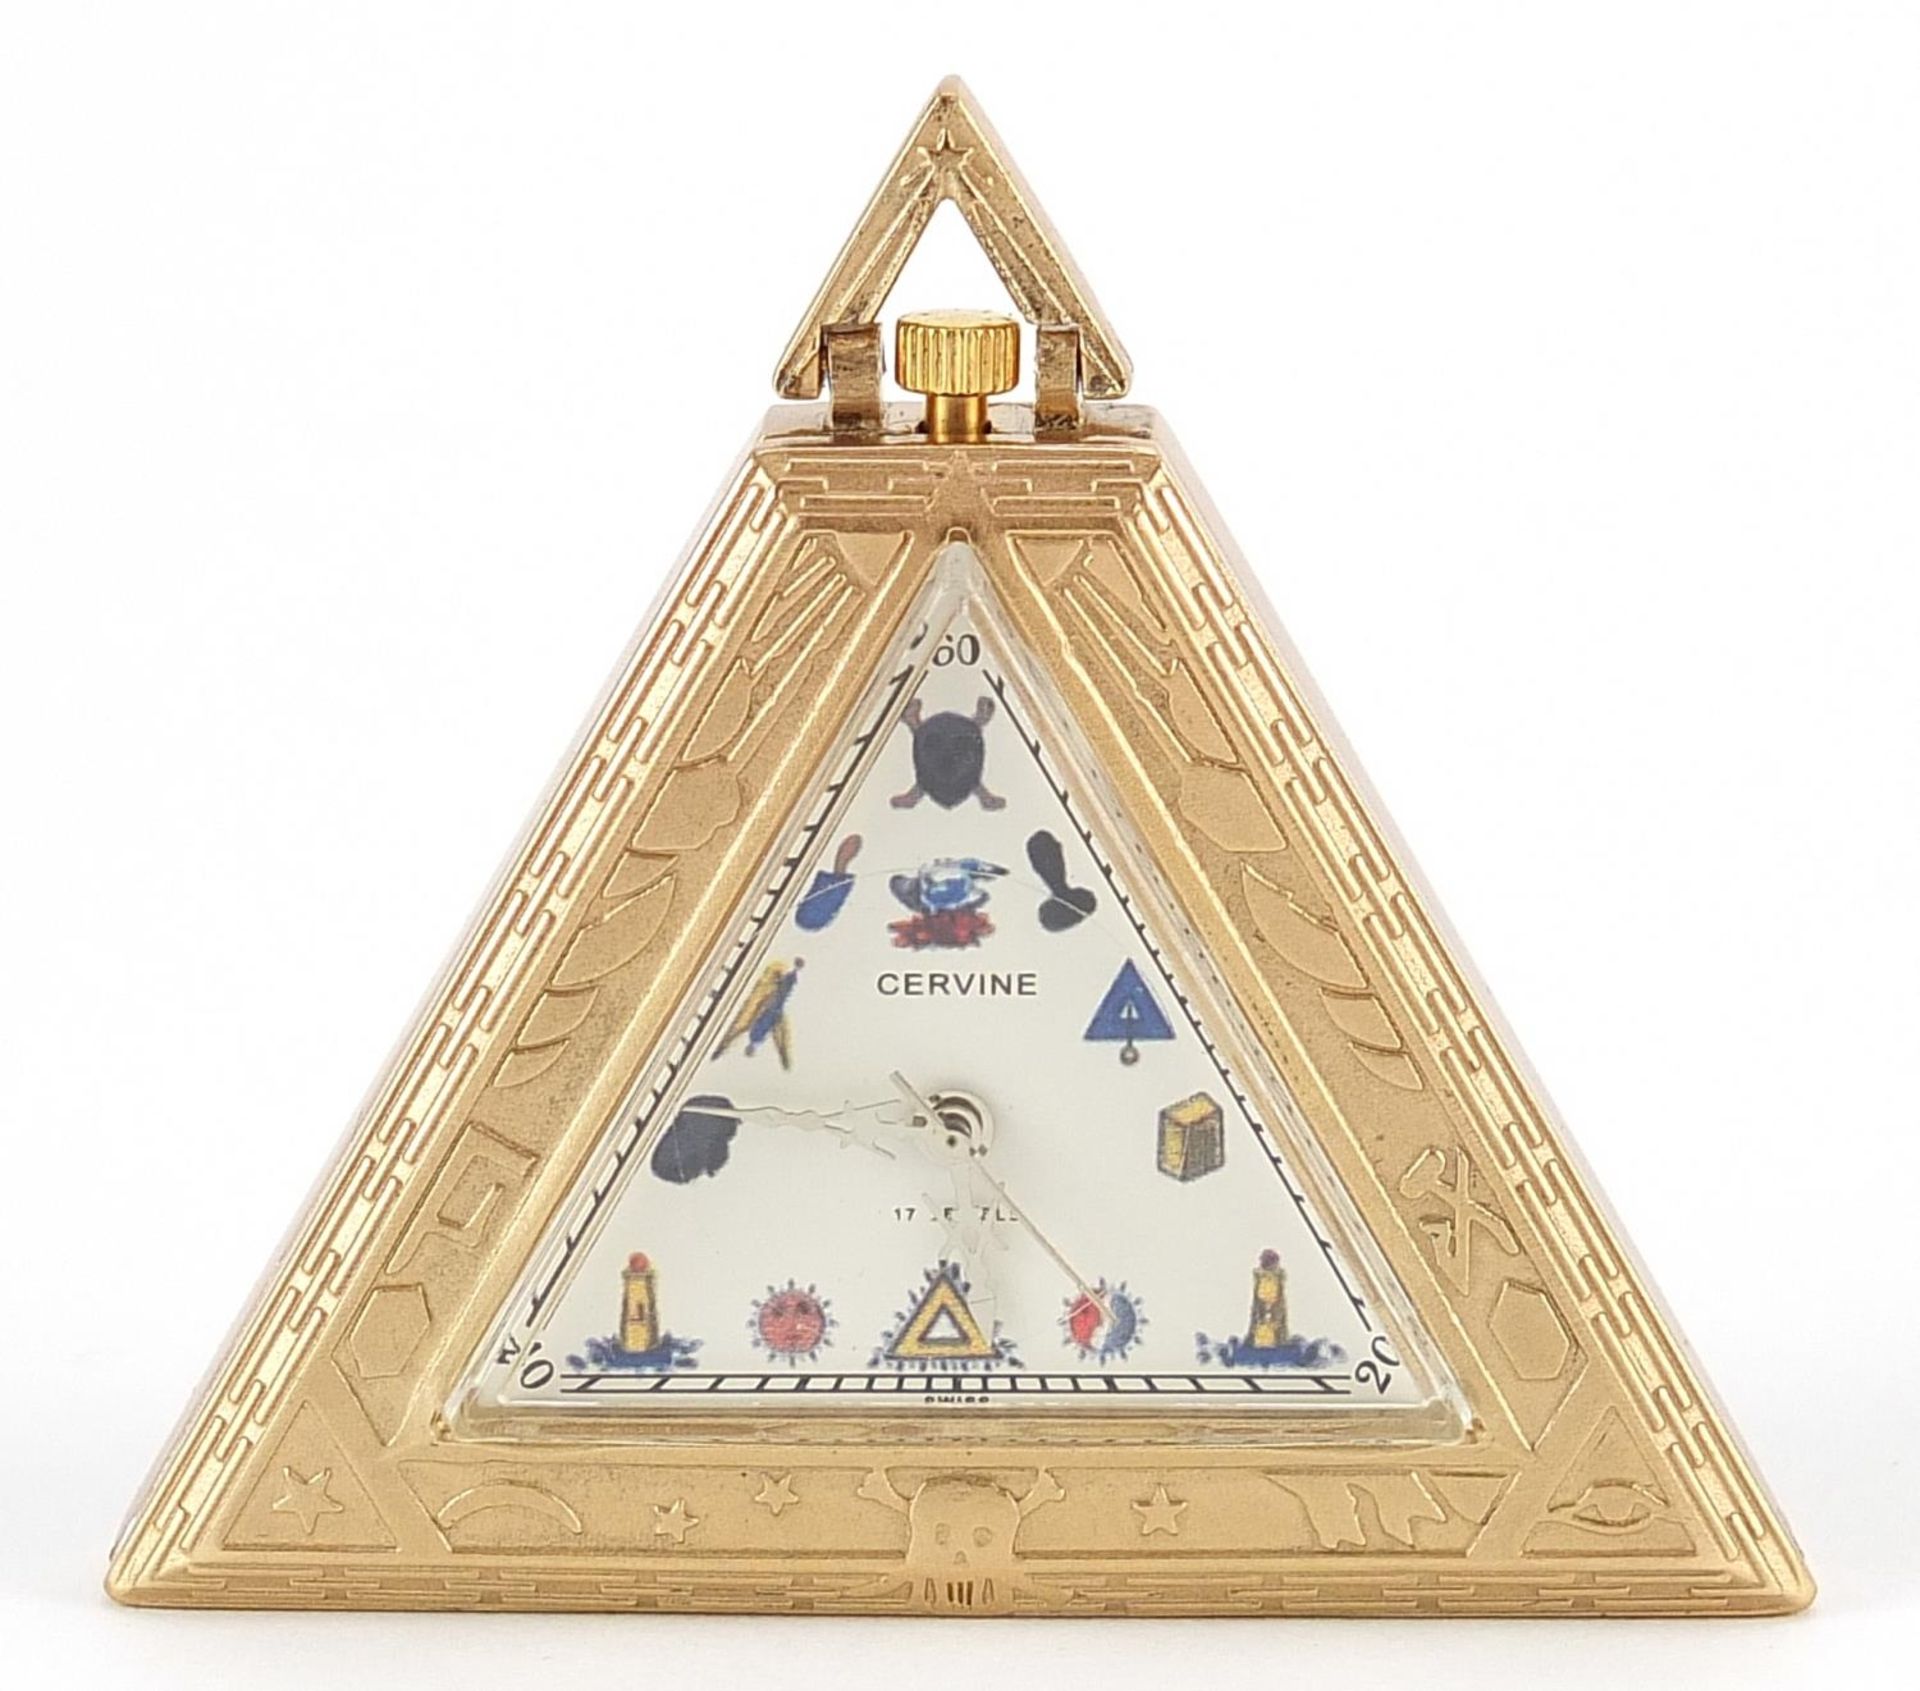 Masonic silver gilt triangular pocket watch, 5cm high, 51.2g